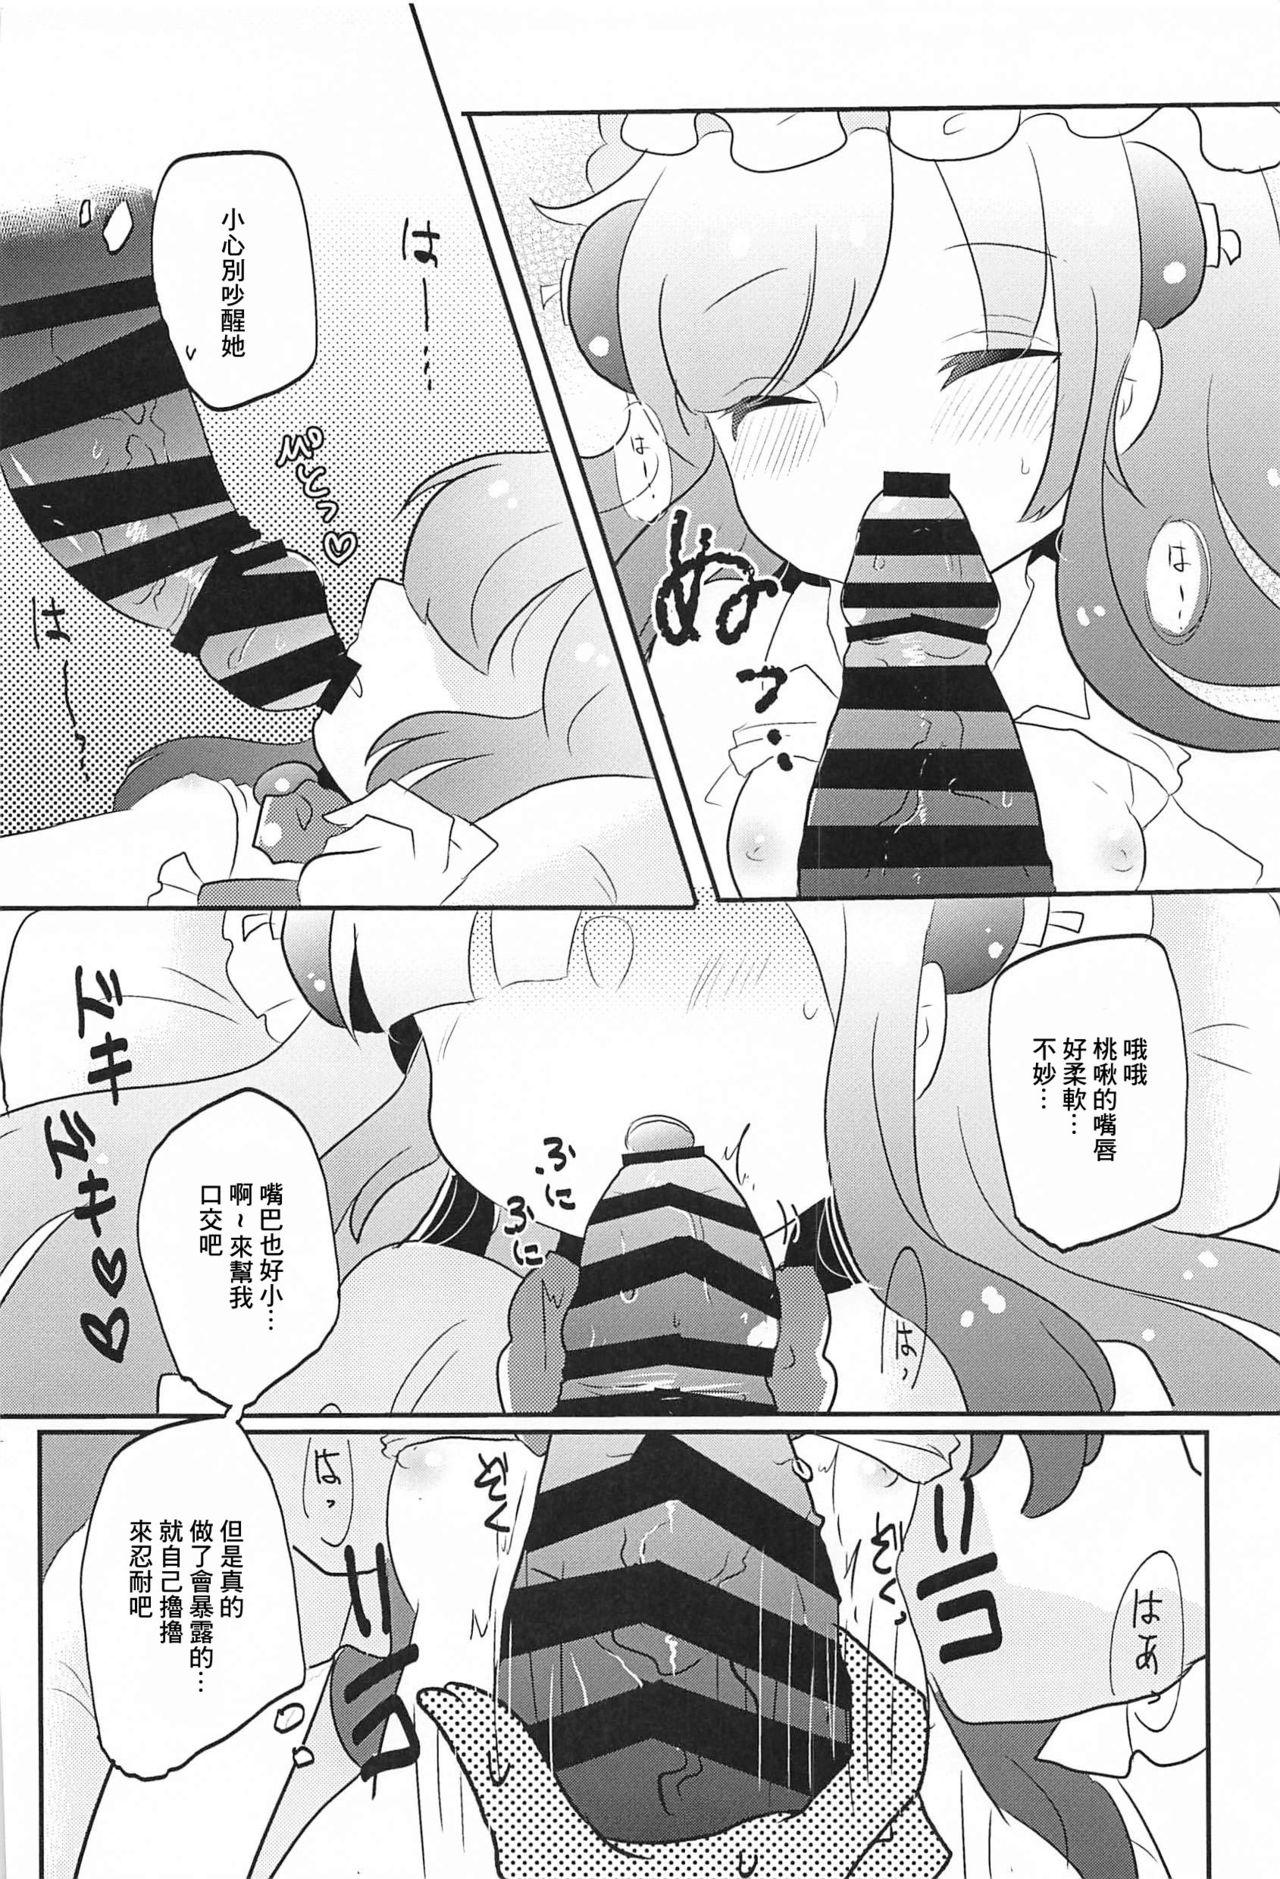 Action Blocker no Sugosa o Wakarasete Agemasu - Bomber girl Spread - Page 12